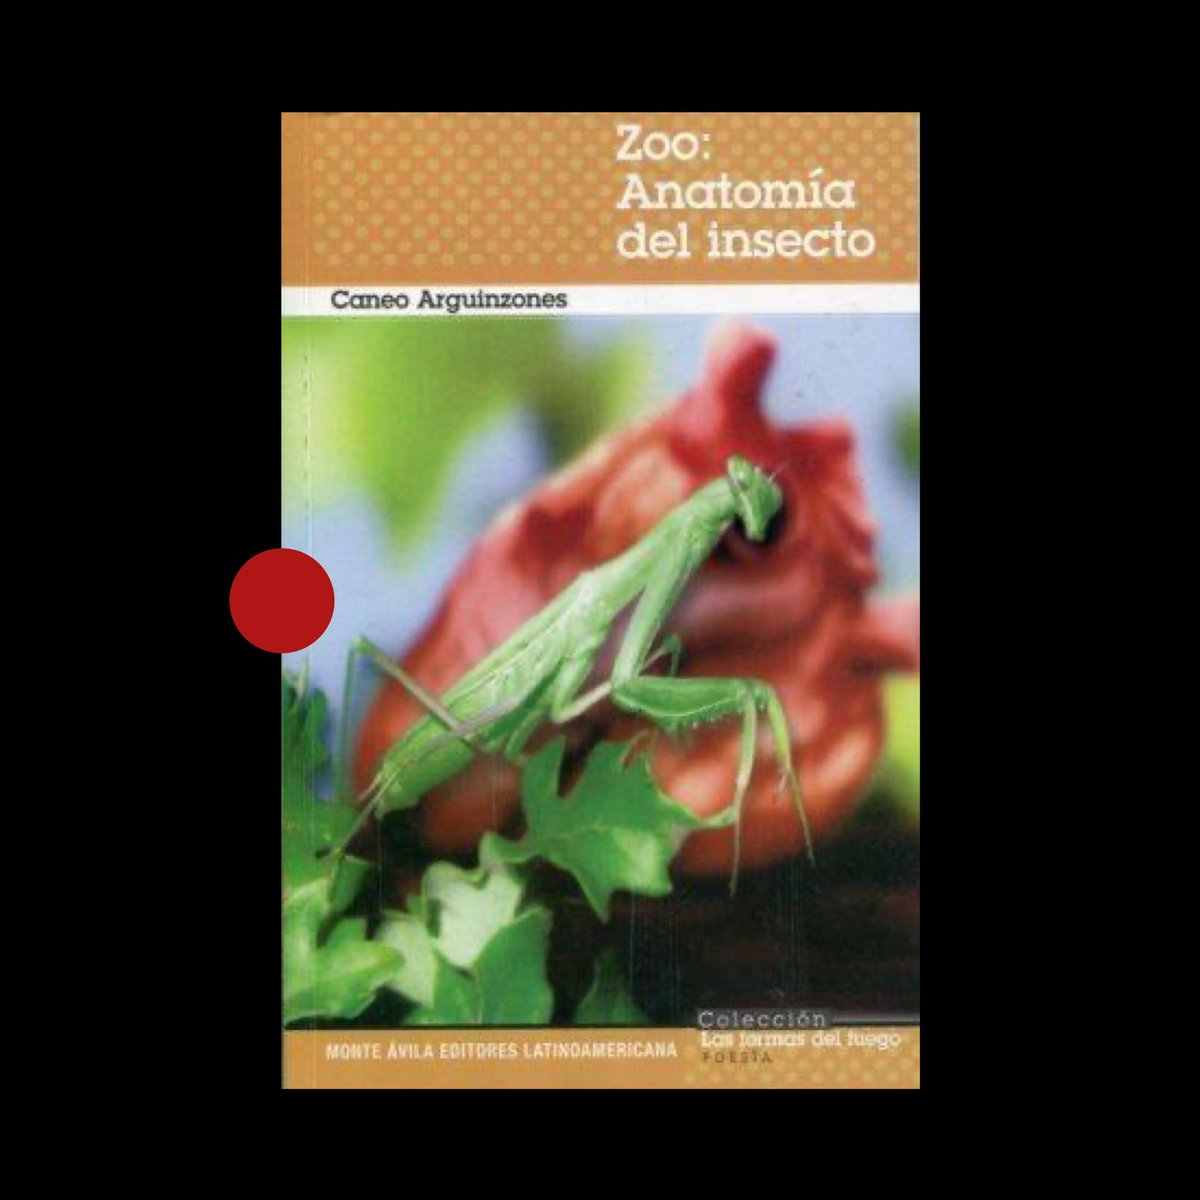 «Zoo: Anatomía del insecto» (2013) de Caneo Arguinzones disponible para descarga gratuita en @PoetasVEN